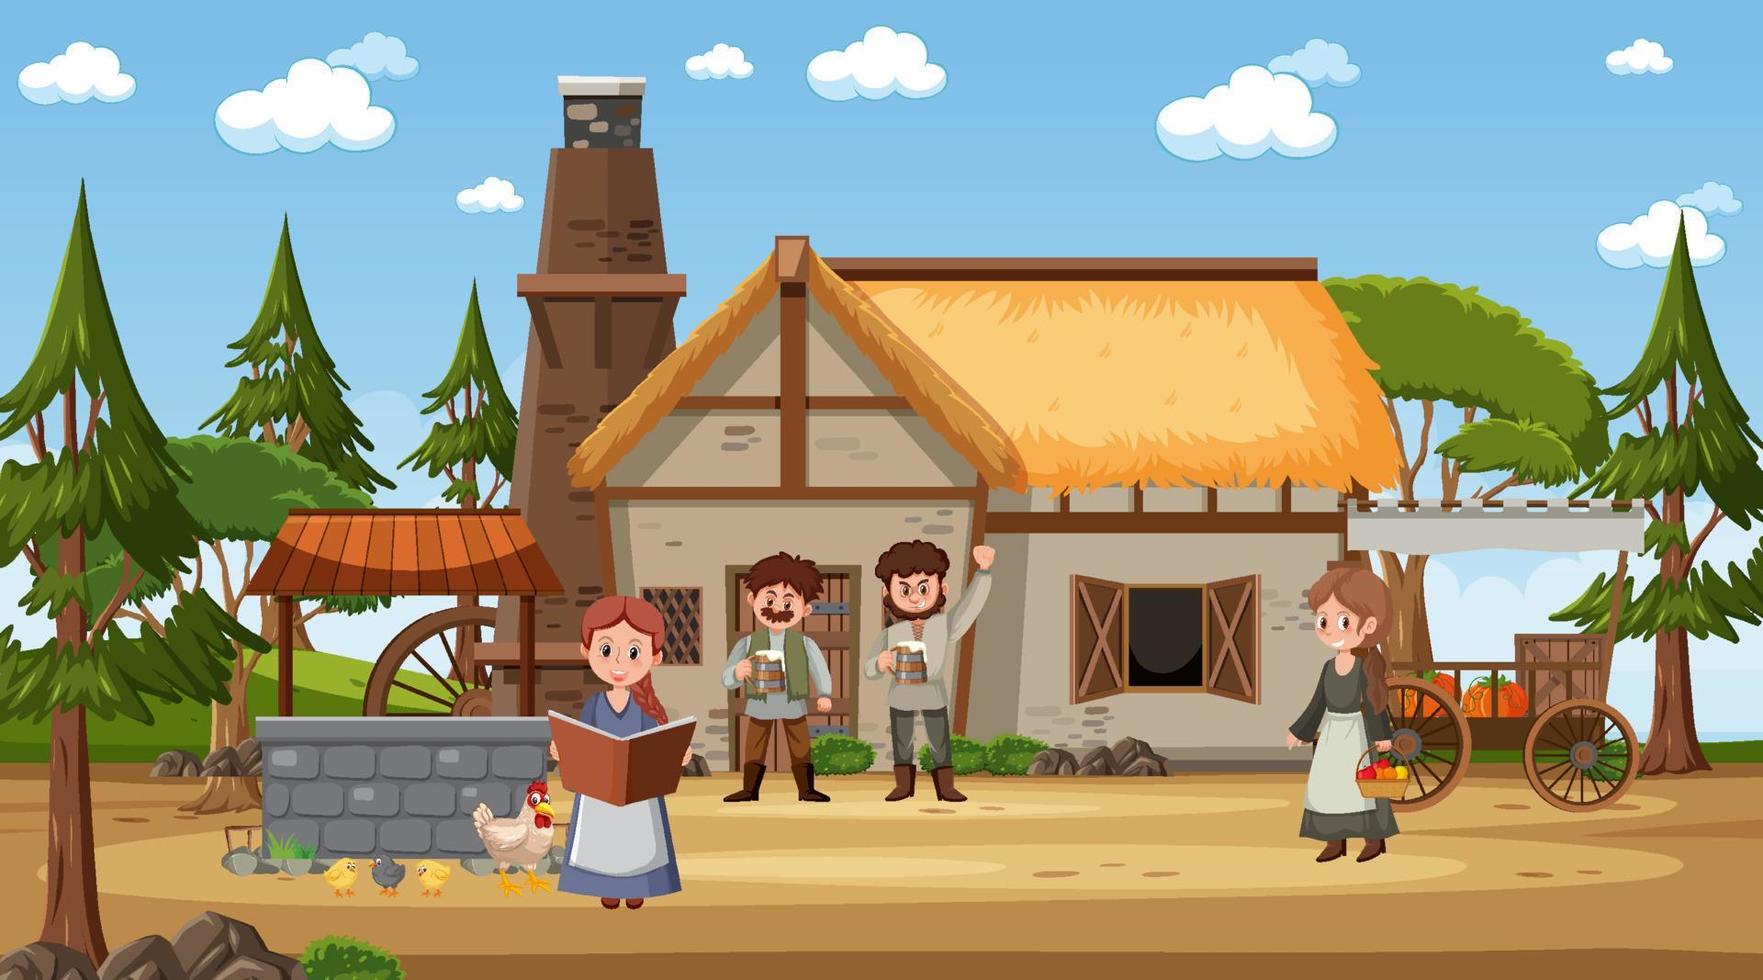 scène de ville médiévale avec des villageois vecteur